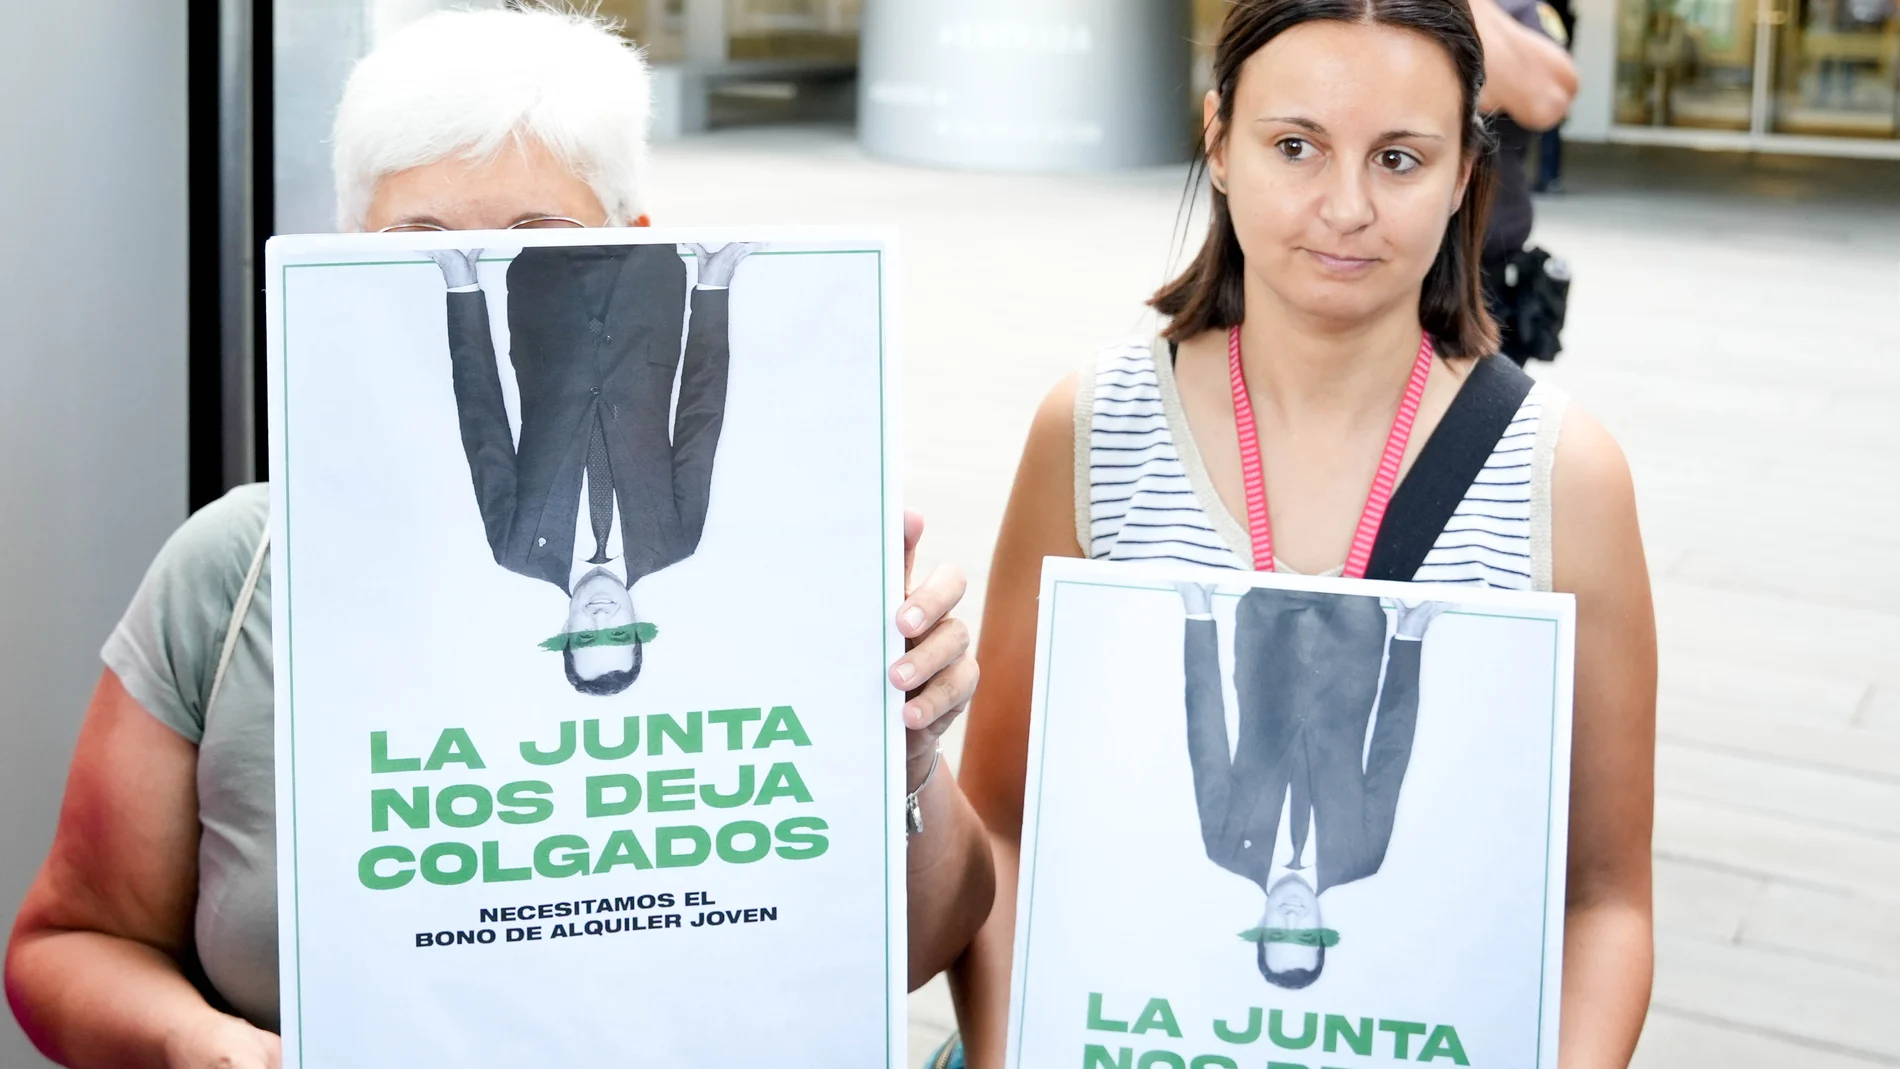 Miembros de la plataforma de Afectados por el Bono Alquiler Joven en Andalucía, protestan a las puertas de la Consejería de Fomento, Articulación del Territorio y Vivienda, a 09 de octubre del 2023 en Sevilla (Andalucía, España). Jóvenes andaluces protestan en las ocho provincias para exigir "eficacia" en la gestión del bono alquiler. La Plataforma de Afectados por el Bono Alquiler Joven en Andalucía ha convocado movilizaciones este lunes en las ocho provincias para exigir a la Junta "efica...